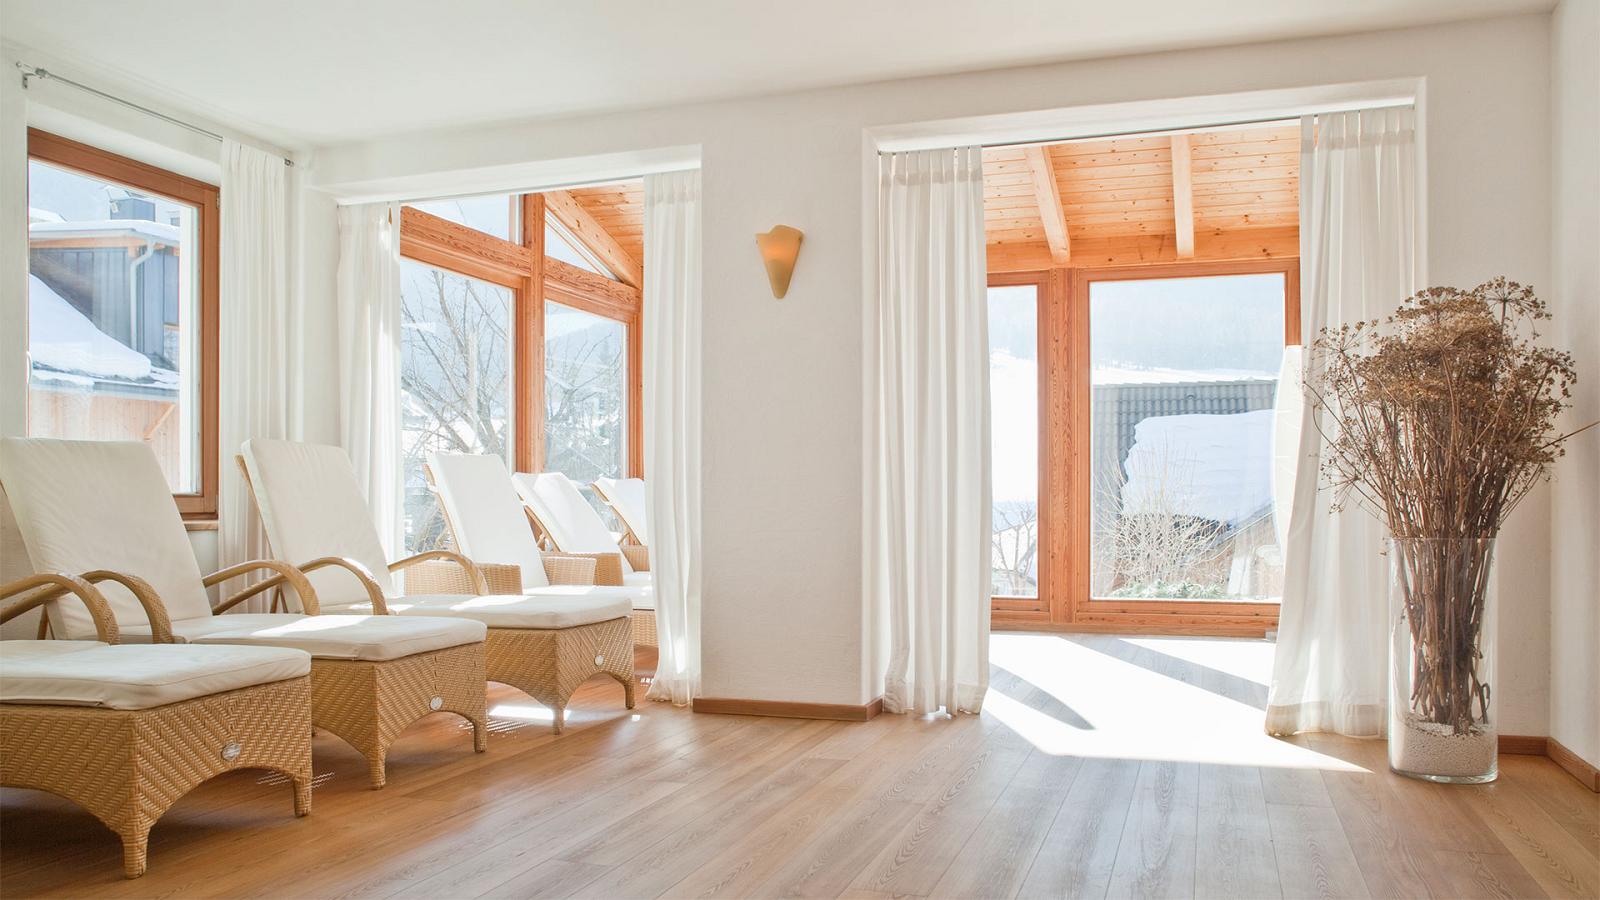 Der elegante Wellnessbereich des Hotels Strobl mit aufgereihten Liegebetten, weißen Gardinen und großen Fenstern